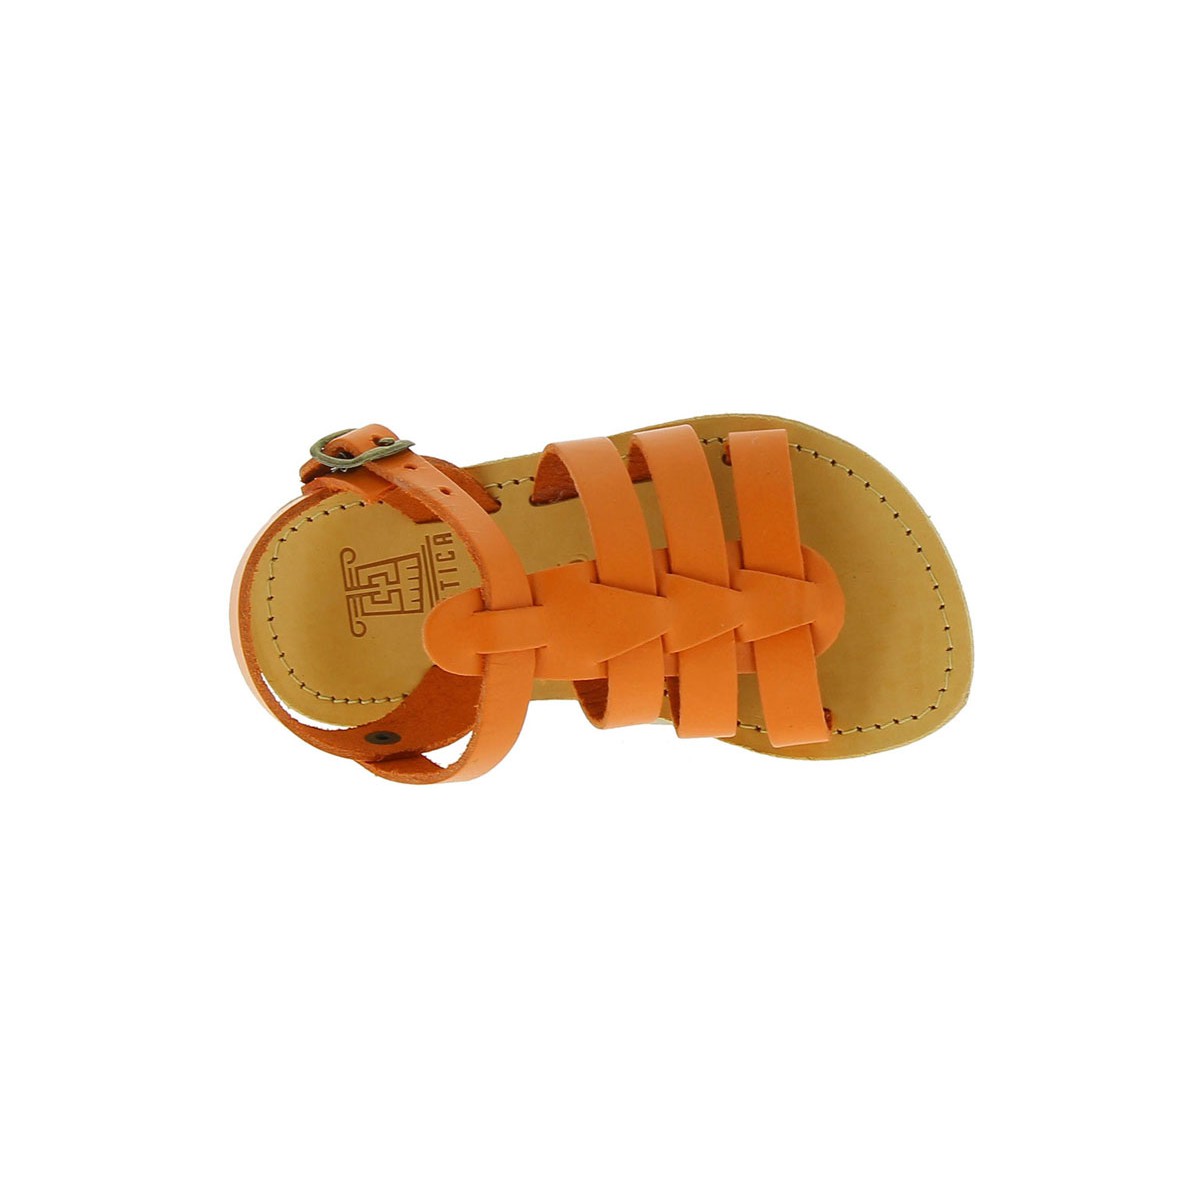 Zapatos Zapatos para niño Sandalias Sandalias para niños de piel de becerro naranja con cierre de hebilla Attica sandals 